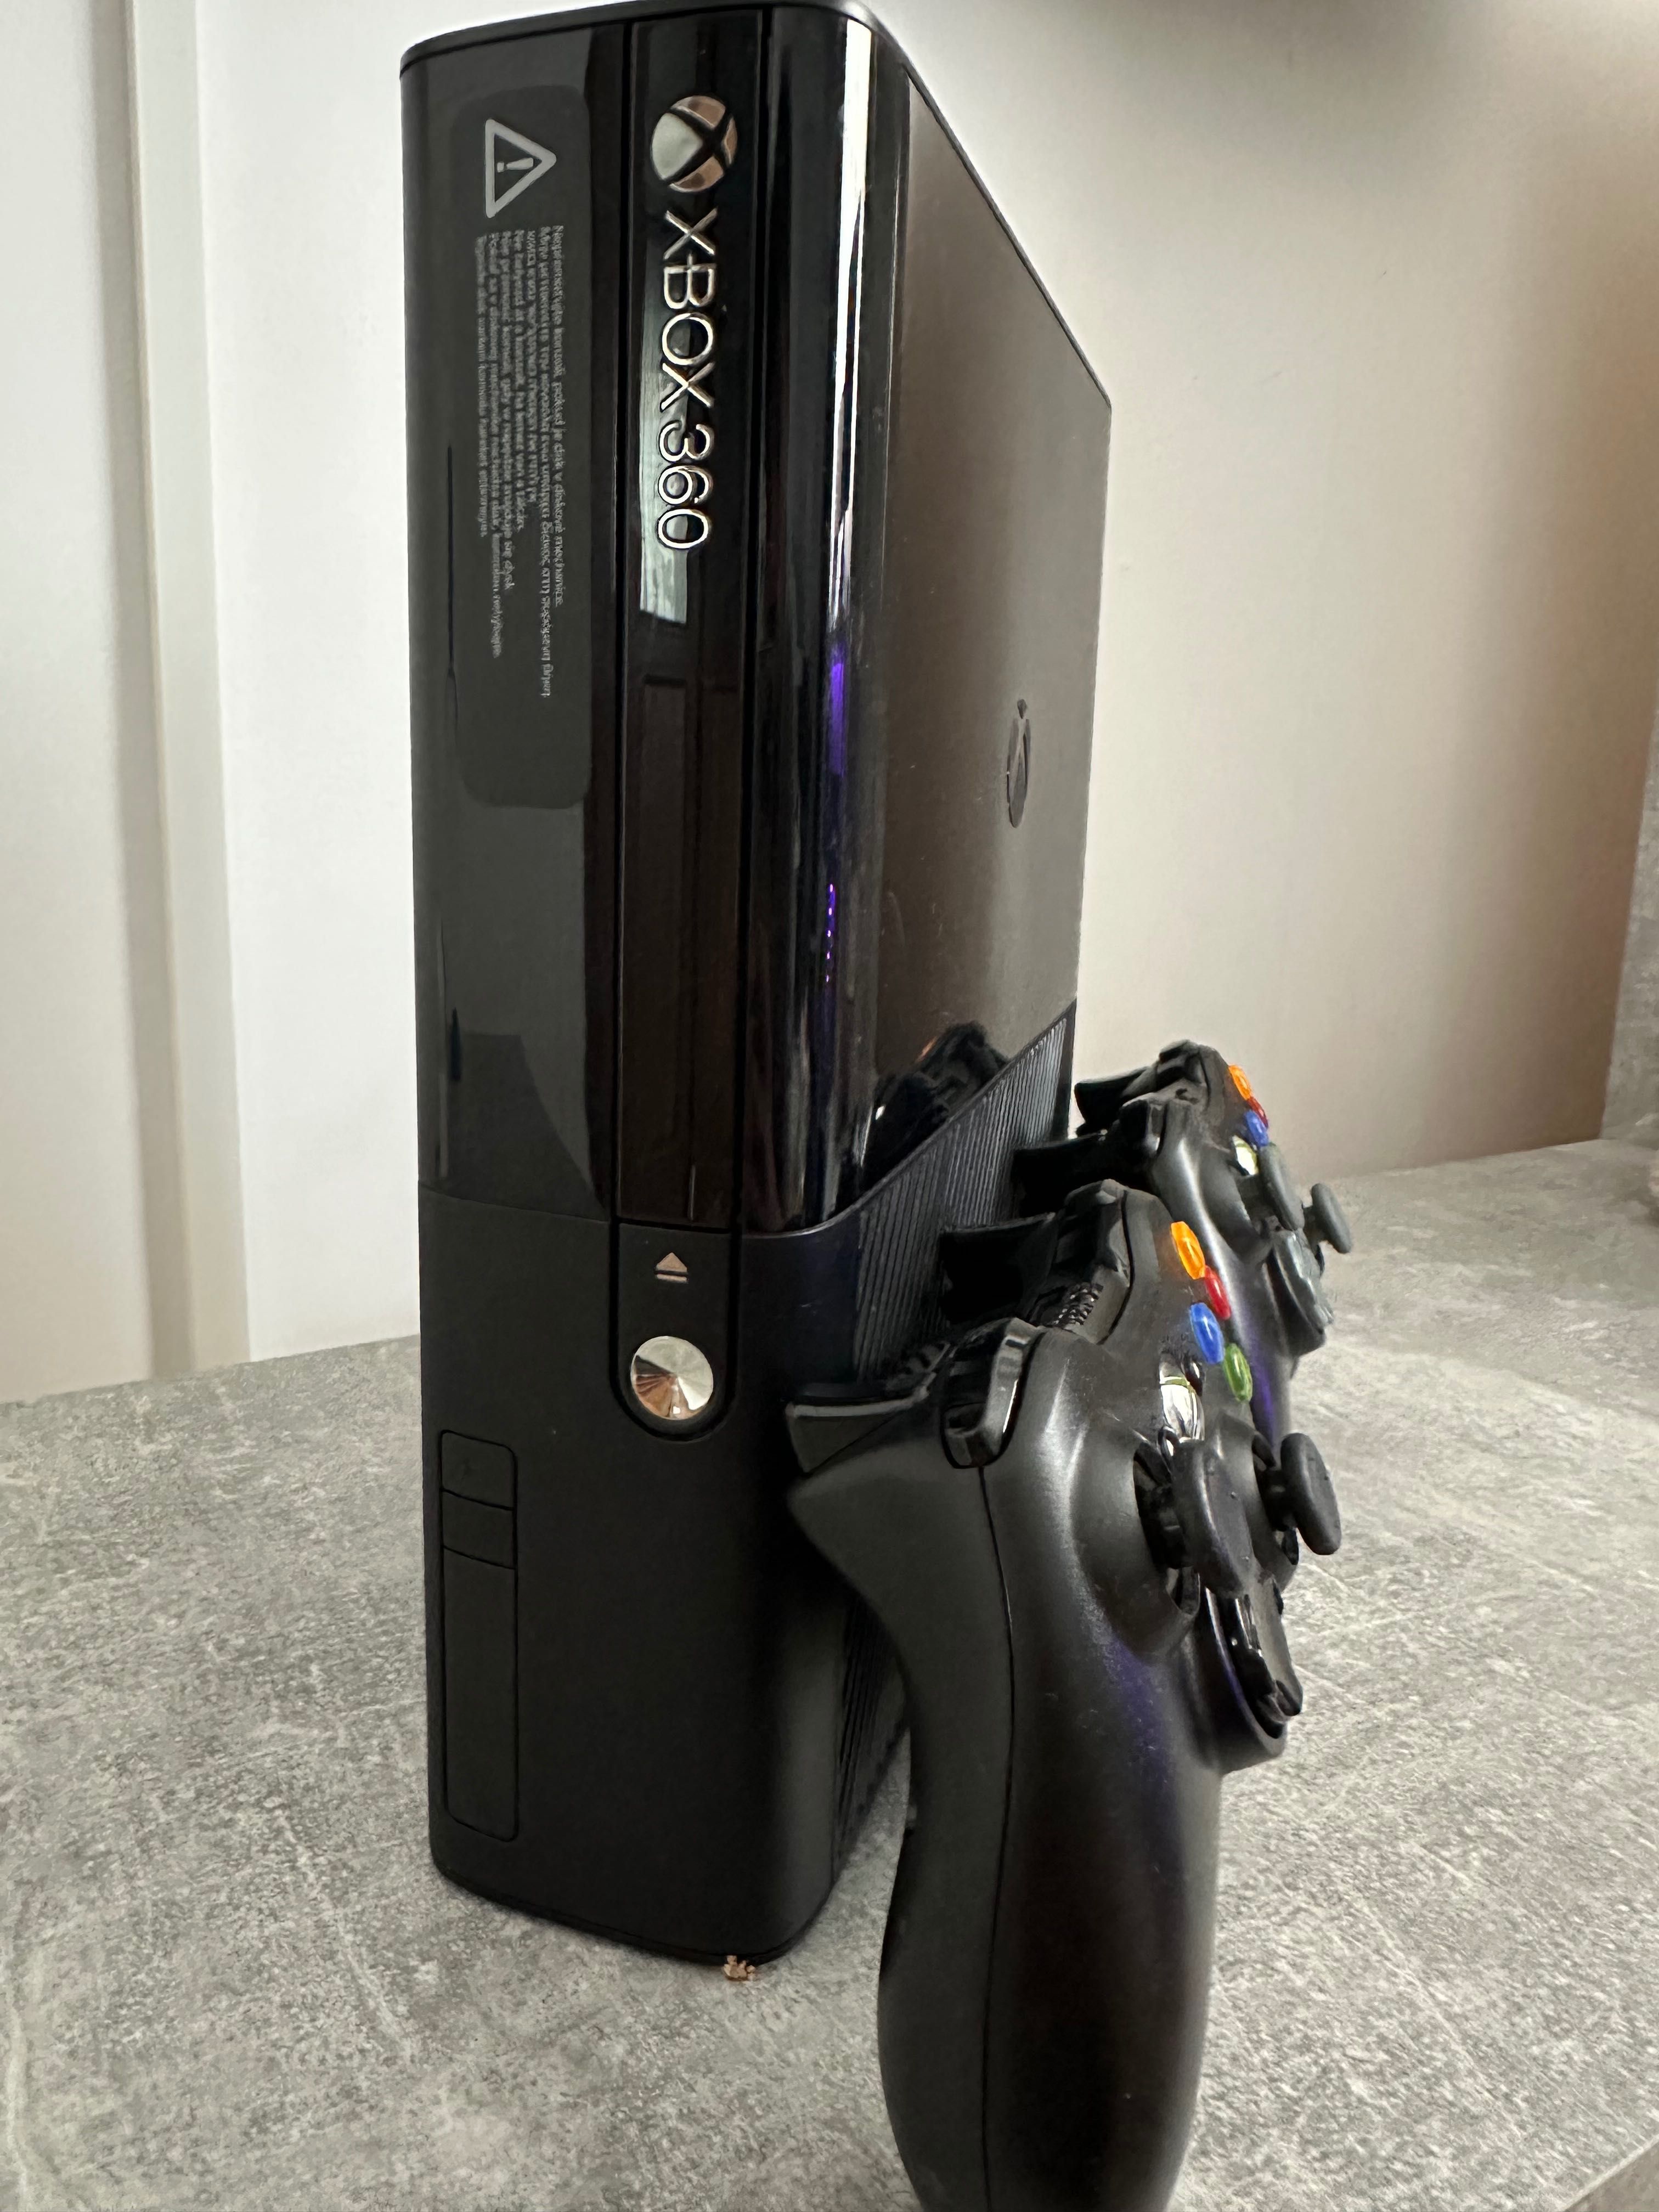 Xbox 360 E 500gb - 3 jocuri - Gta 5, fifa 14, mortal kombat